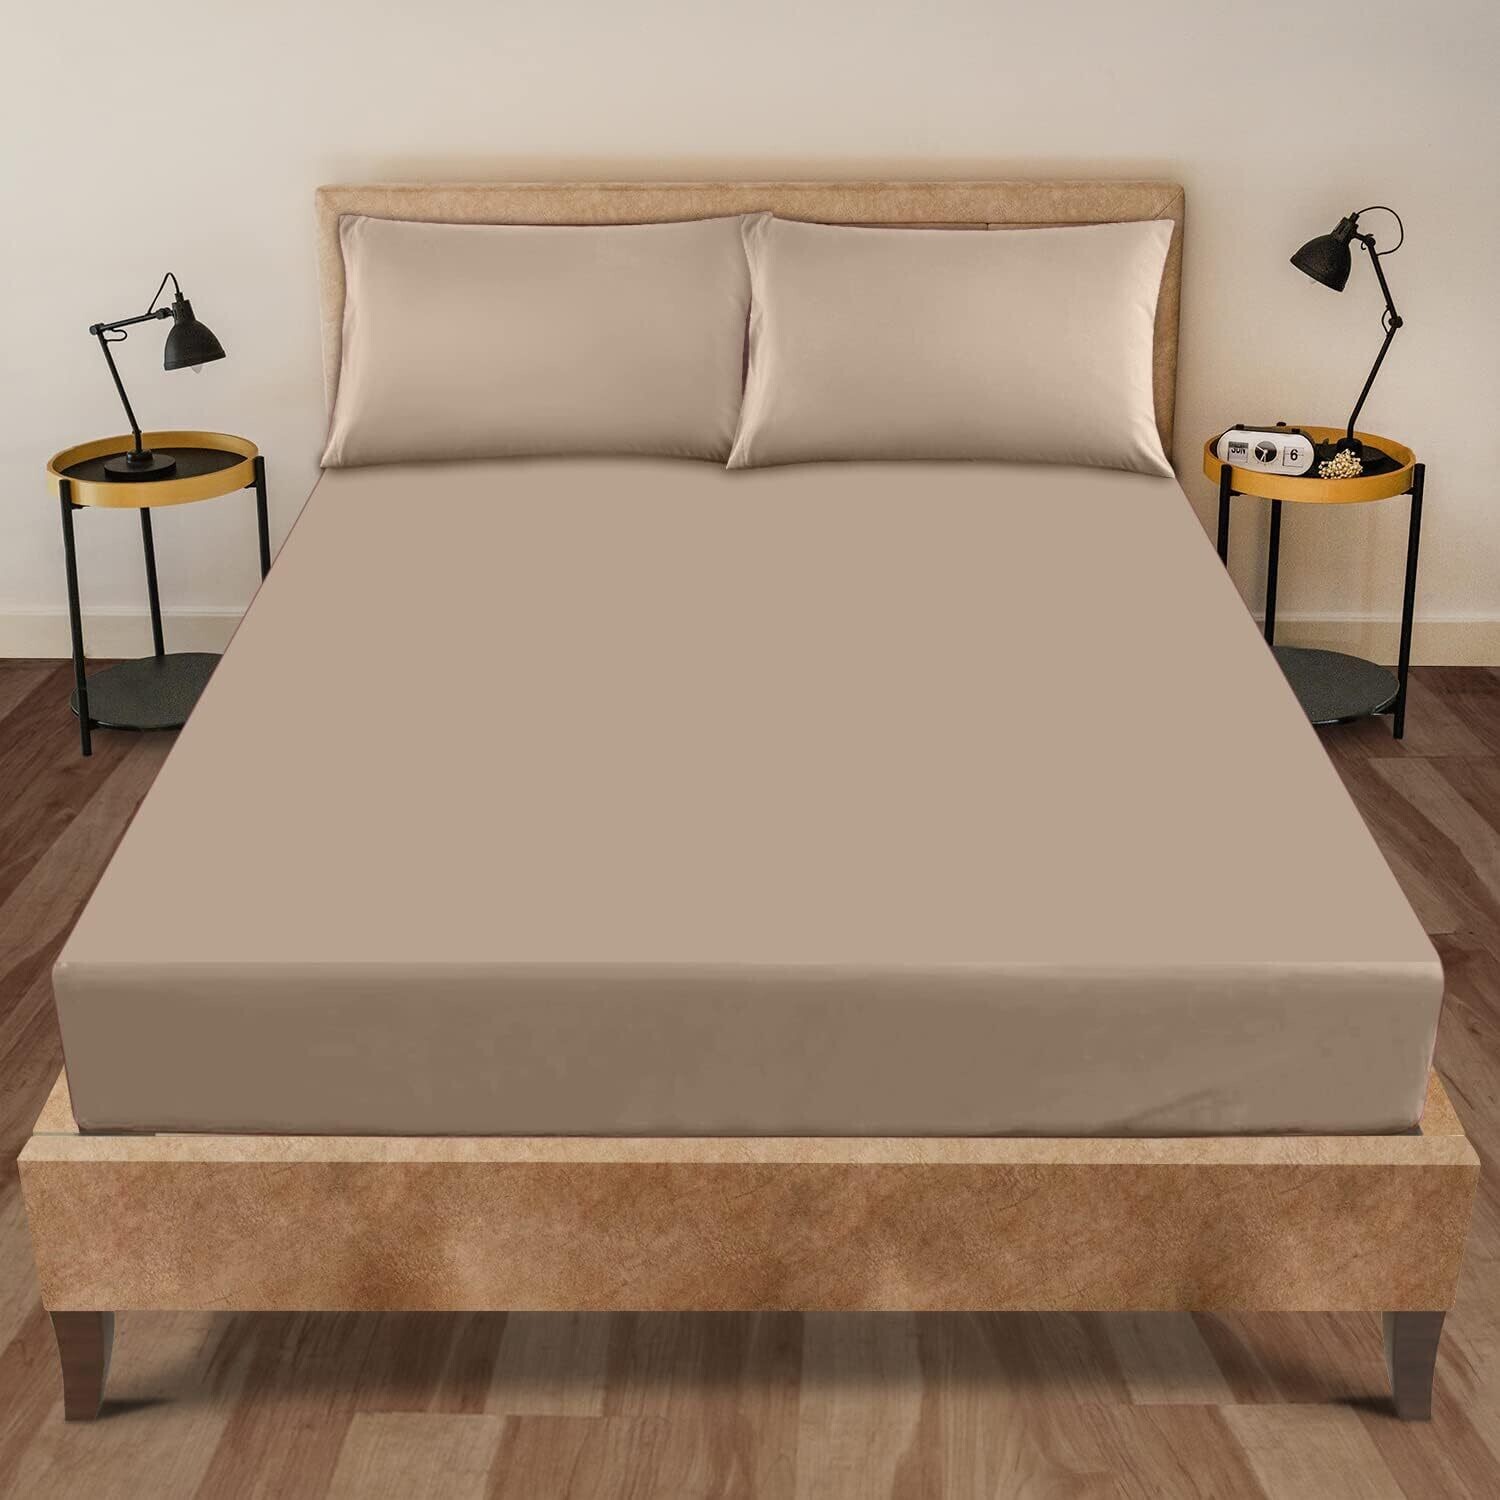 Cozy Bedsheets, plain colored 4pcs Flat sheet polycotton & Pillow cases king size 230x260cms (Beige)